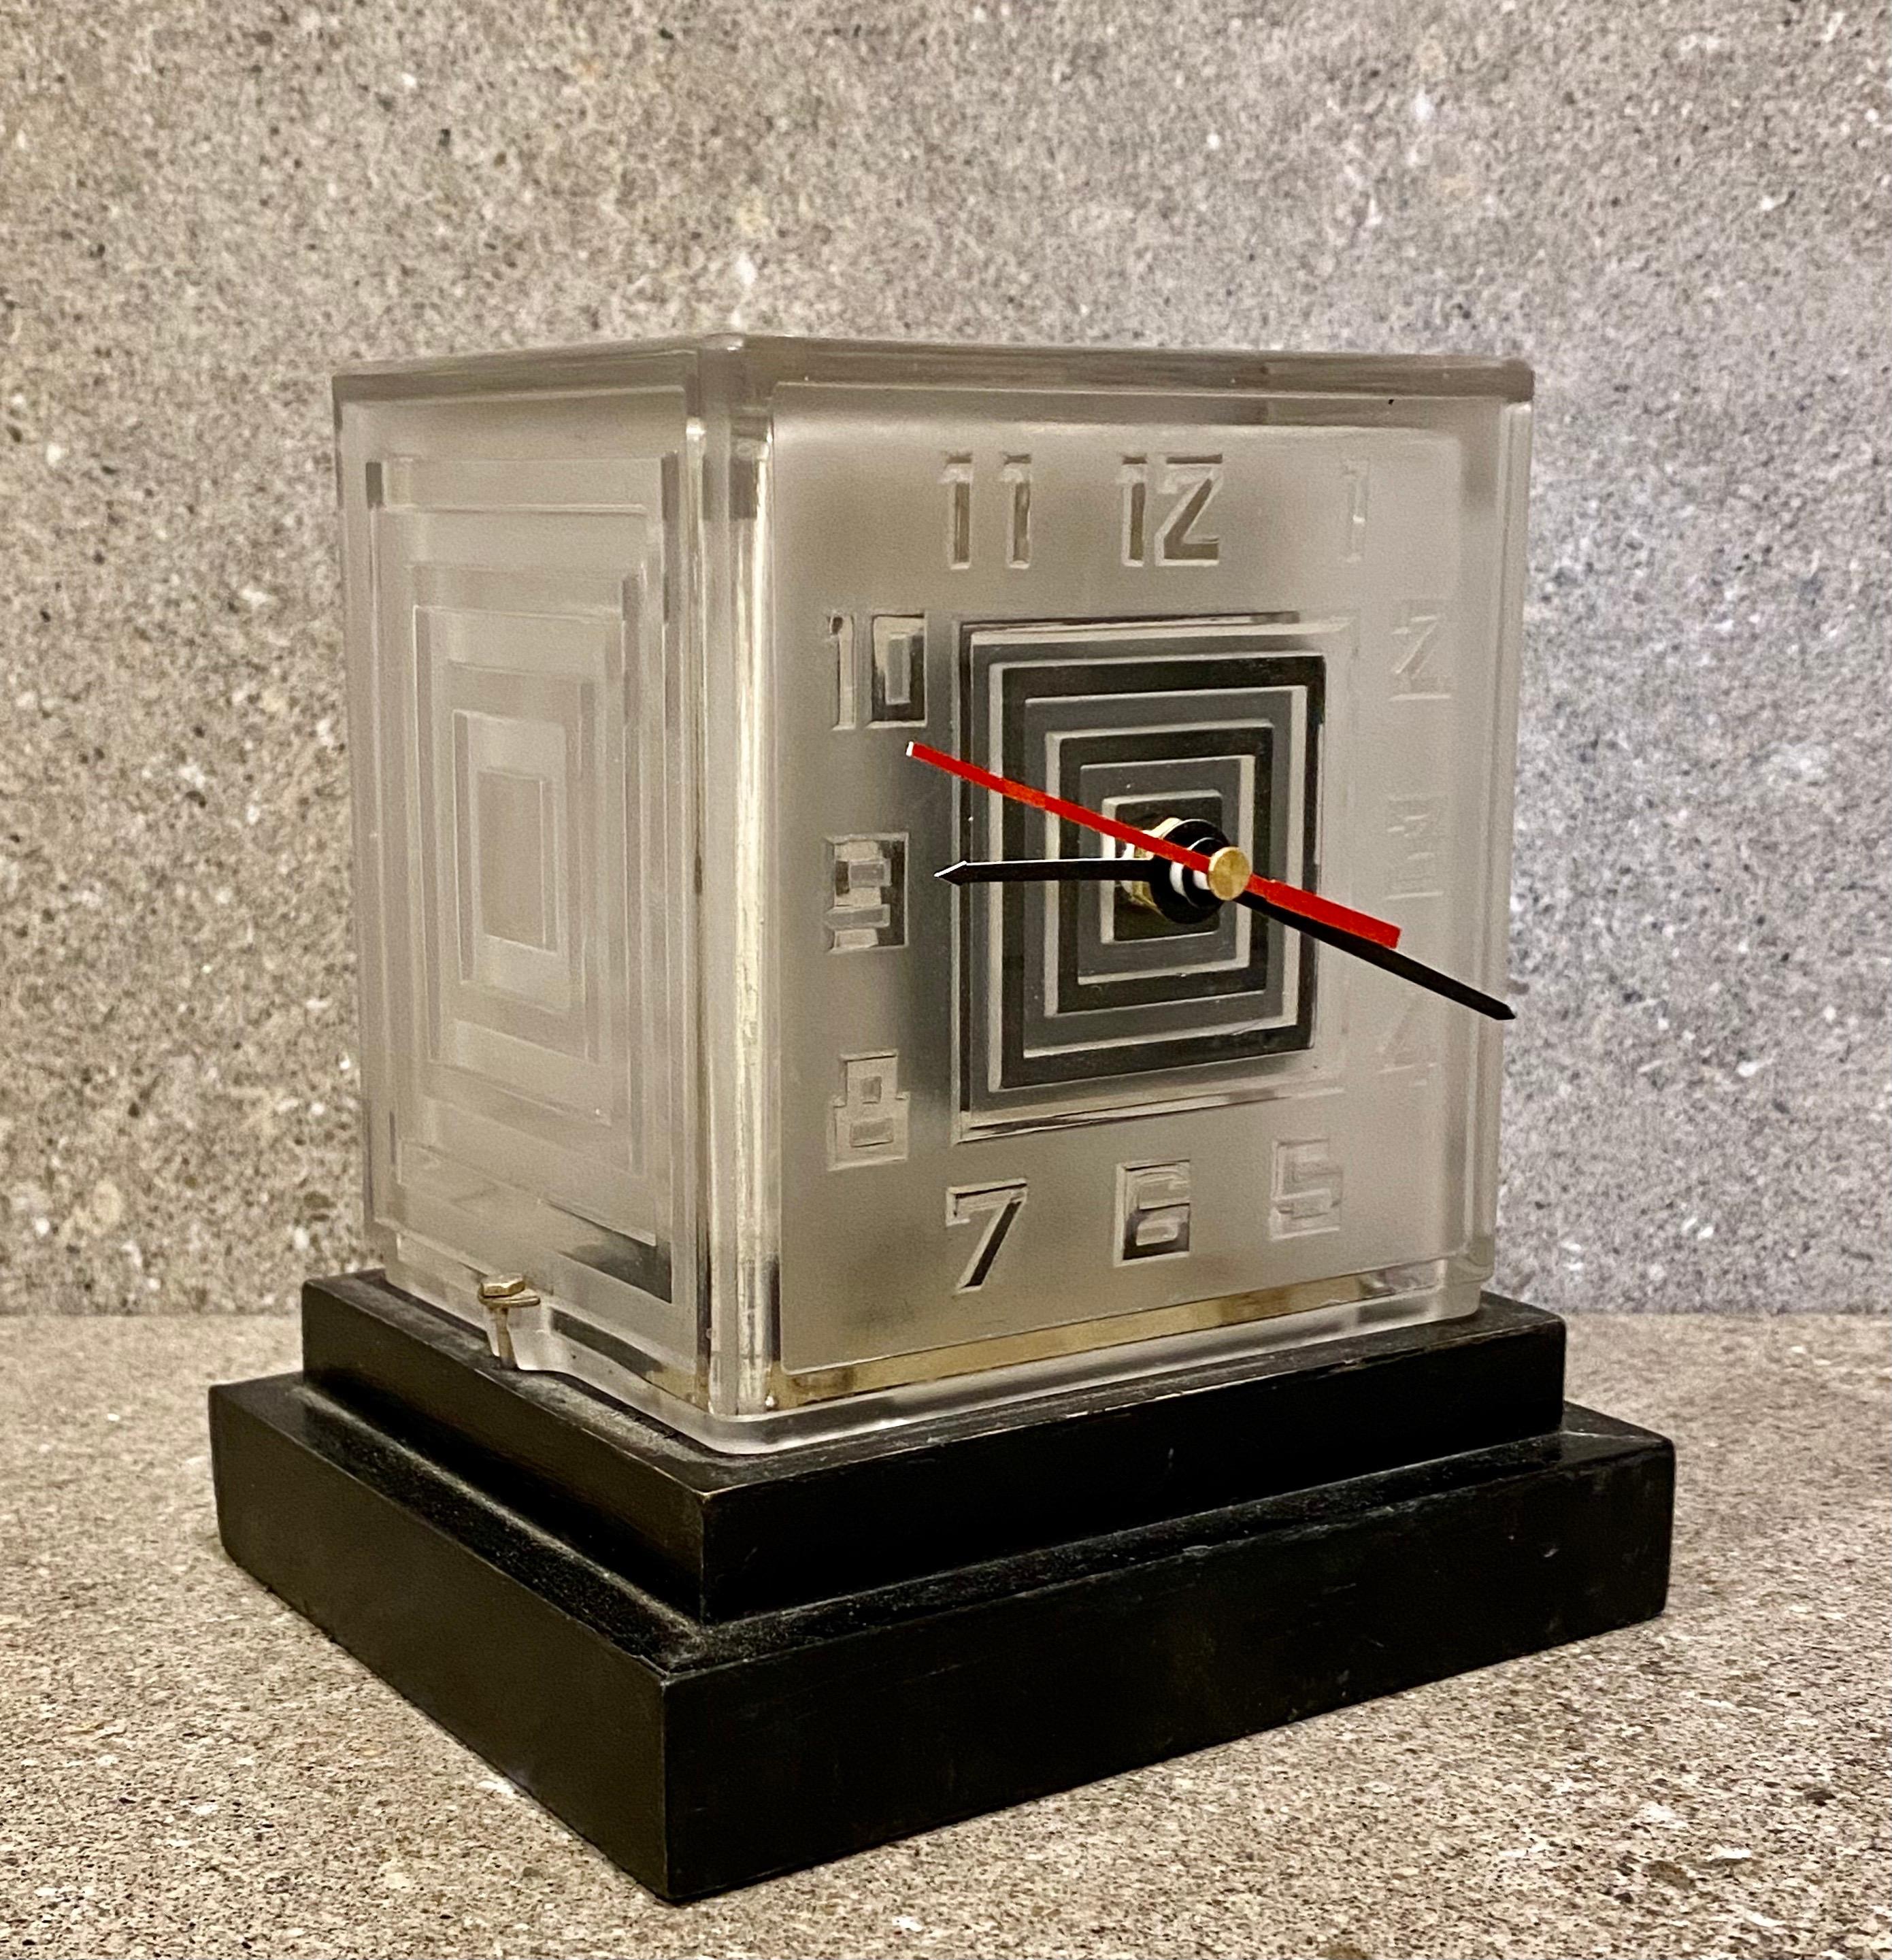 Eine modernistische Bulle-Uhr im Art-Deco-Stil von P.M.Favre. Eine der ersten batteriebetriebenen Uhren aus den 1930er Jahren. Das mattierte Glasgehäuse hat geätzte, stilisierte Ziffern. Der abgestufte Holzsockel ist ebonisiert.
Obwohl die